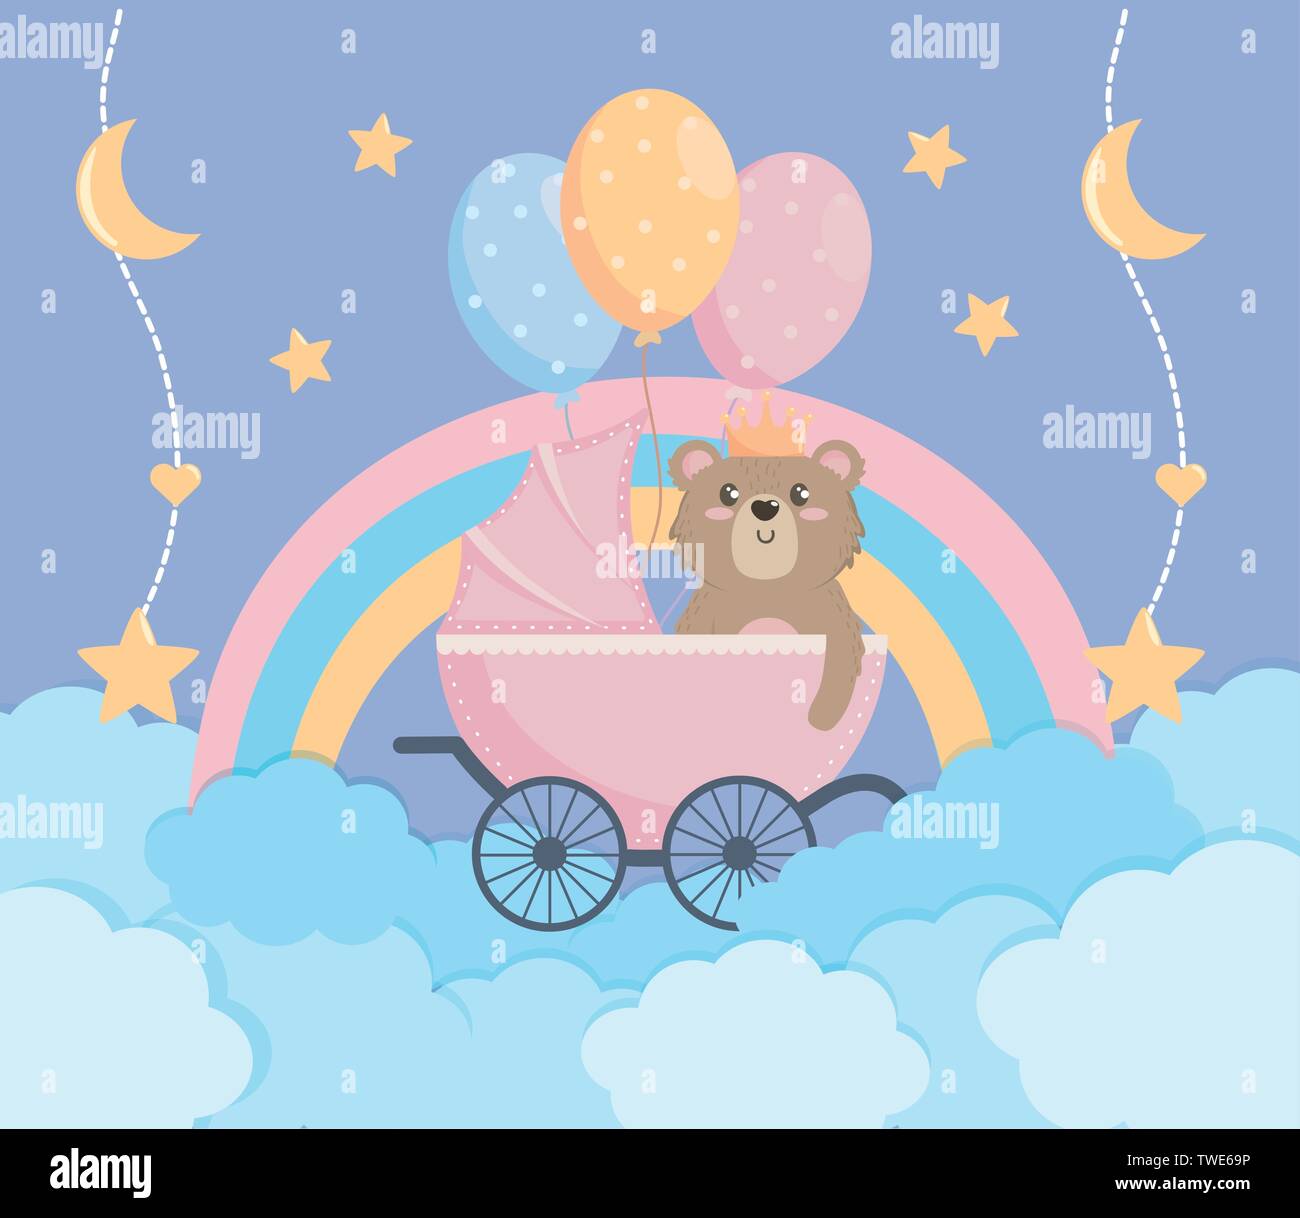 Decoraciones de baby shower de oso de peluche para niño: es un cartel de  oso de